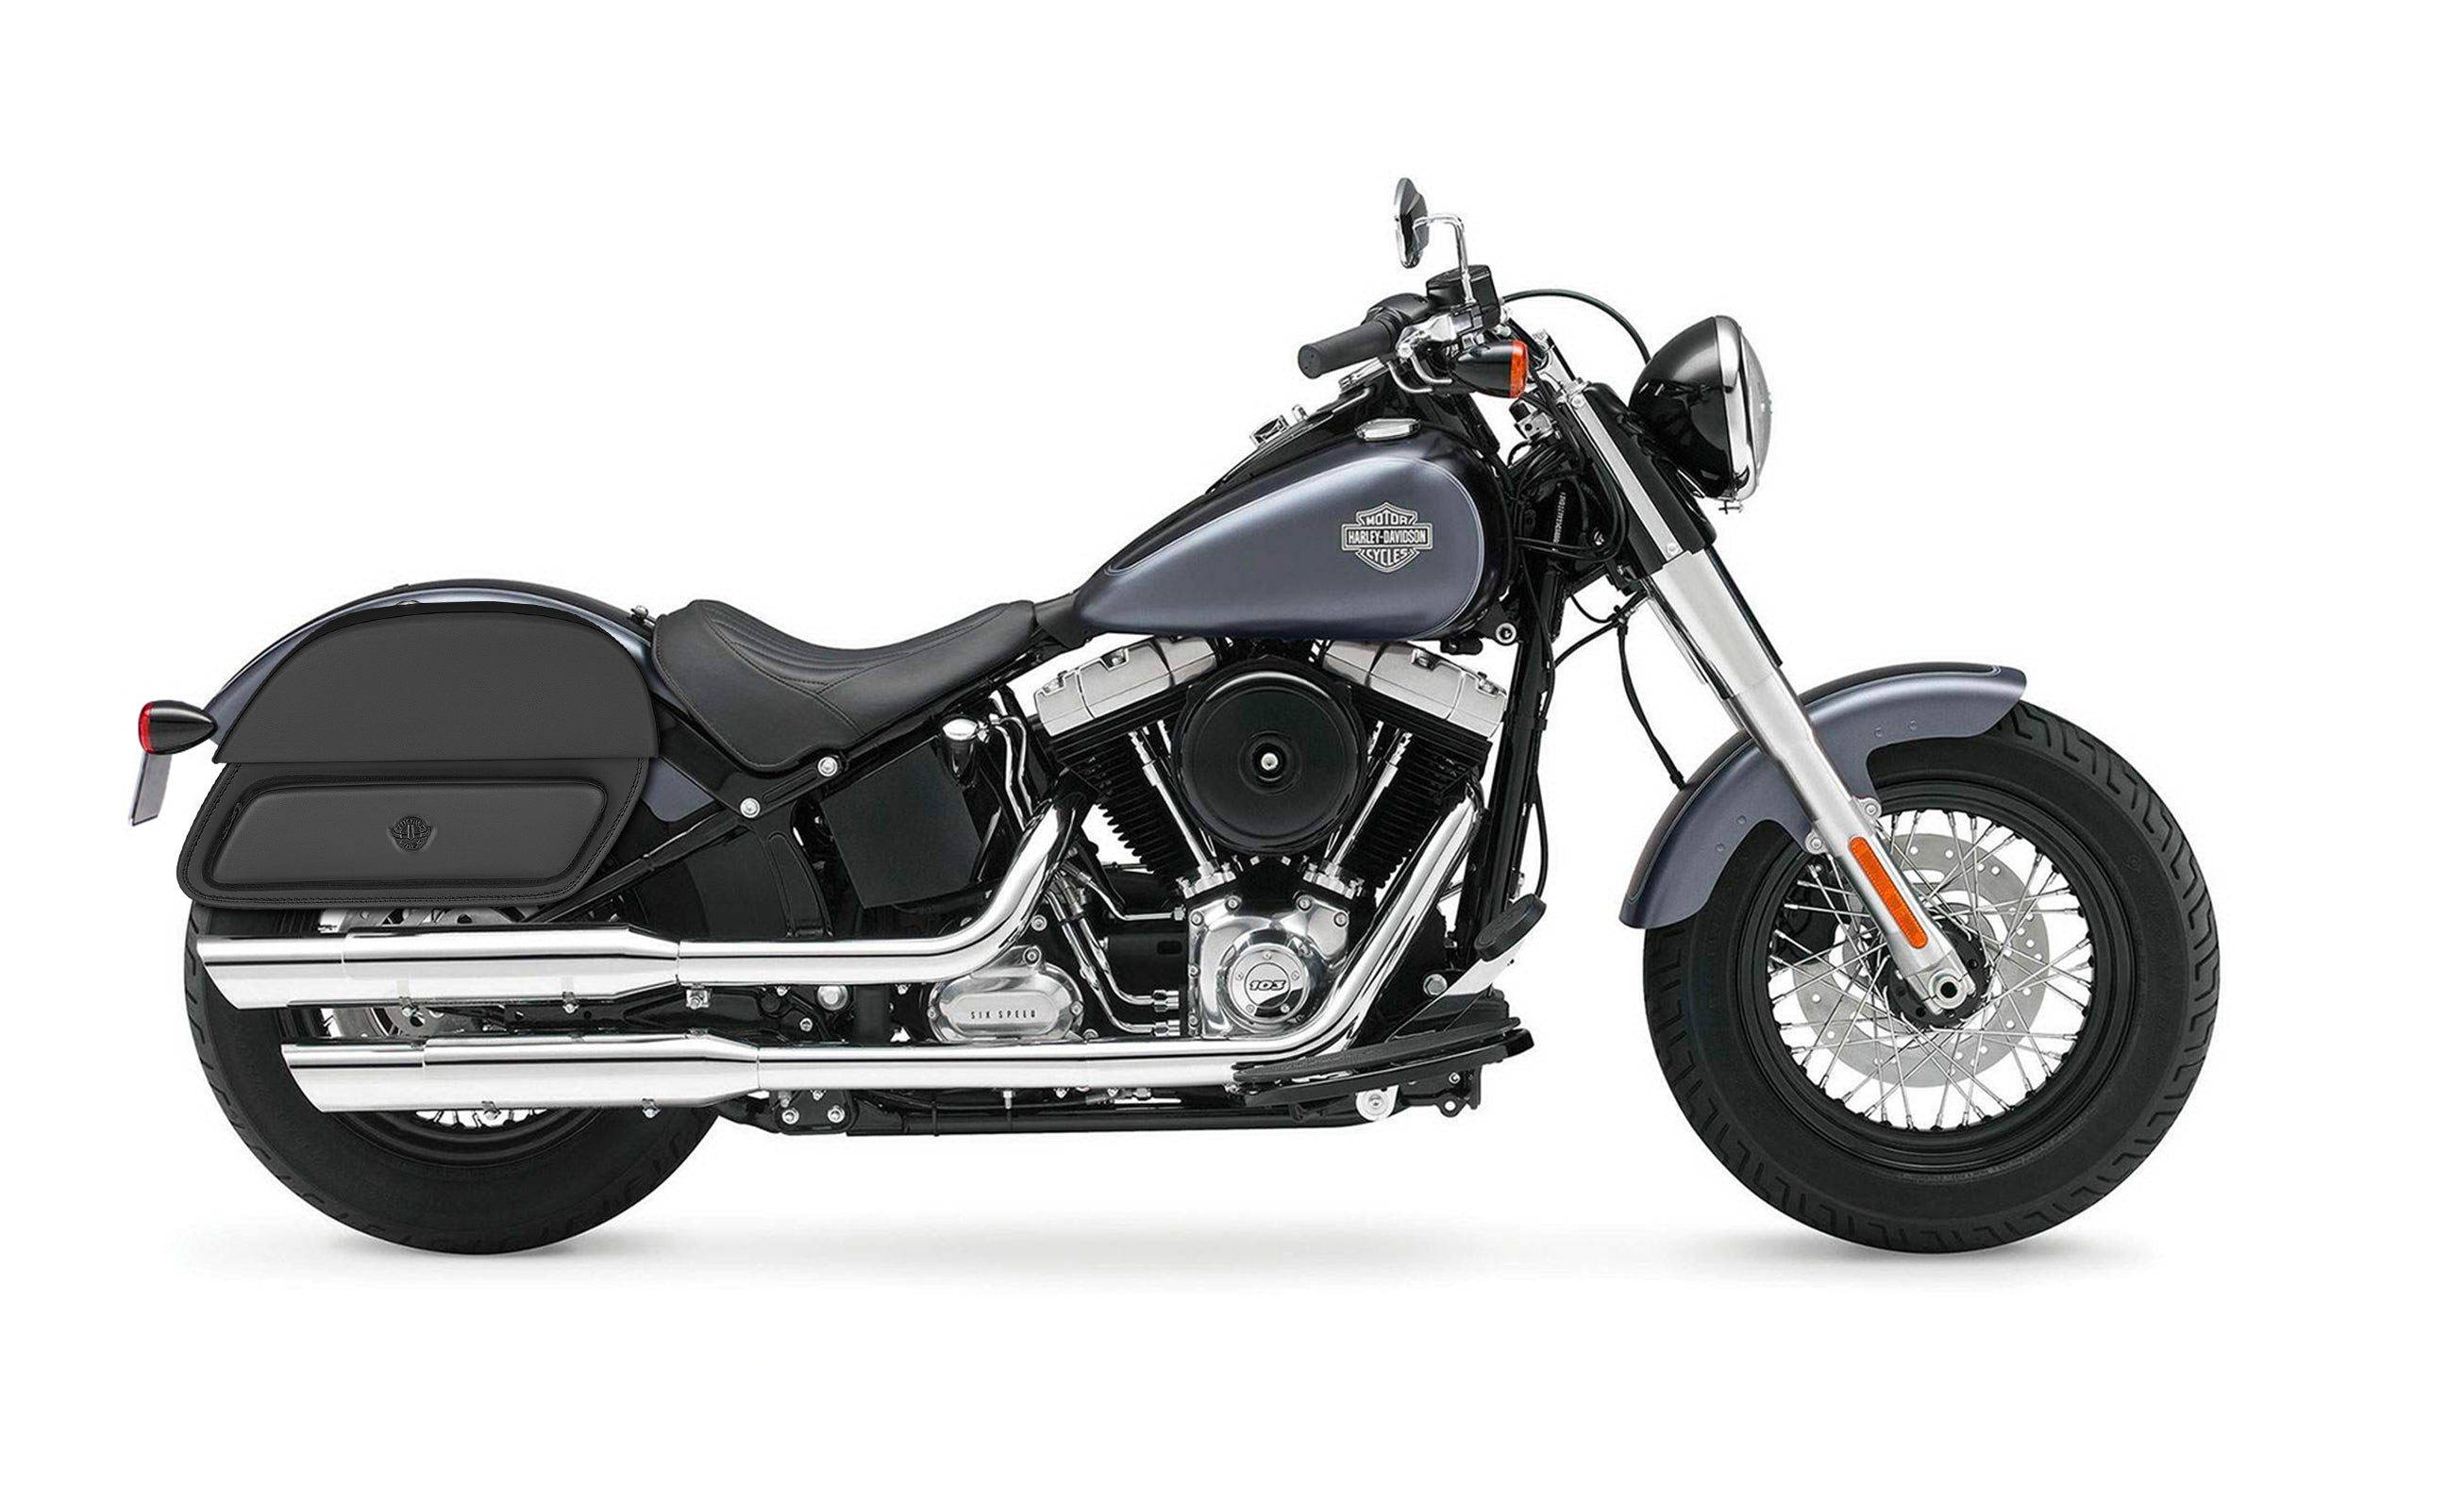 33L - Pantheon Large Motorcycle Saddlebags for Harley Davidson Softail Slim FLS on Bike Photo @expand